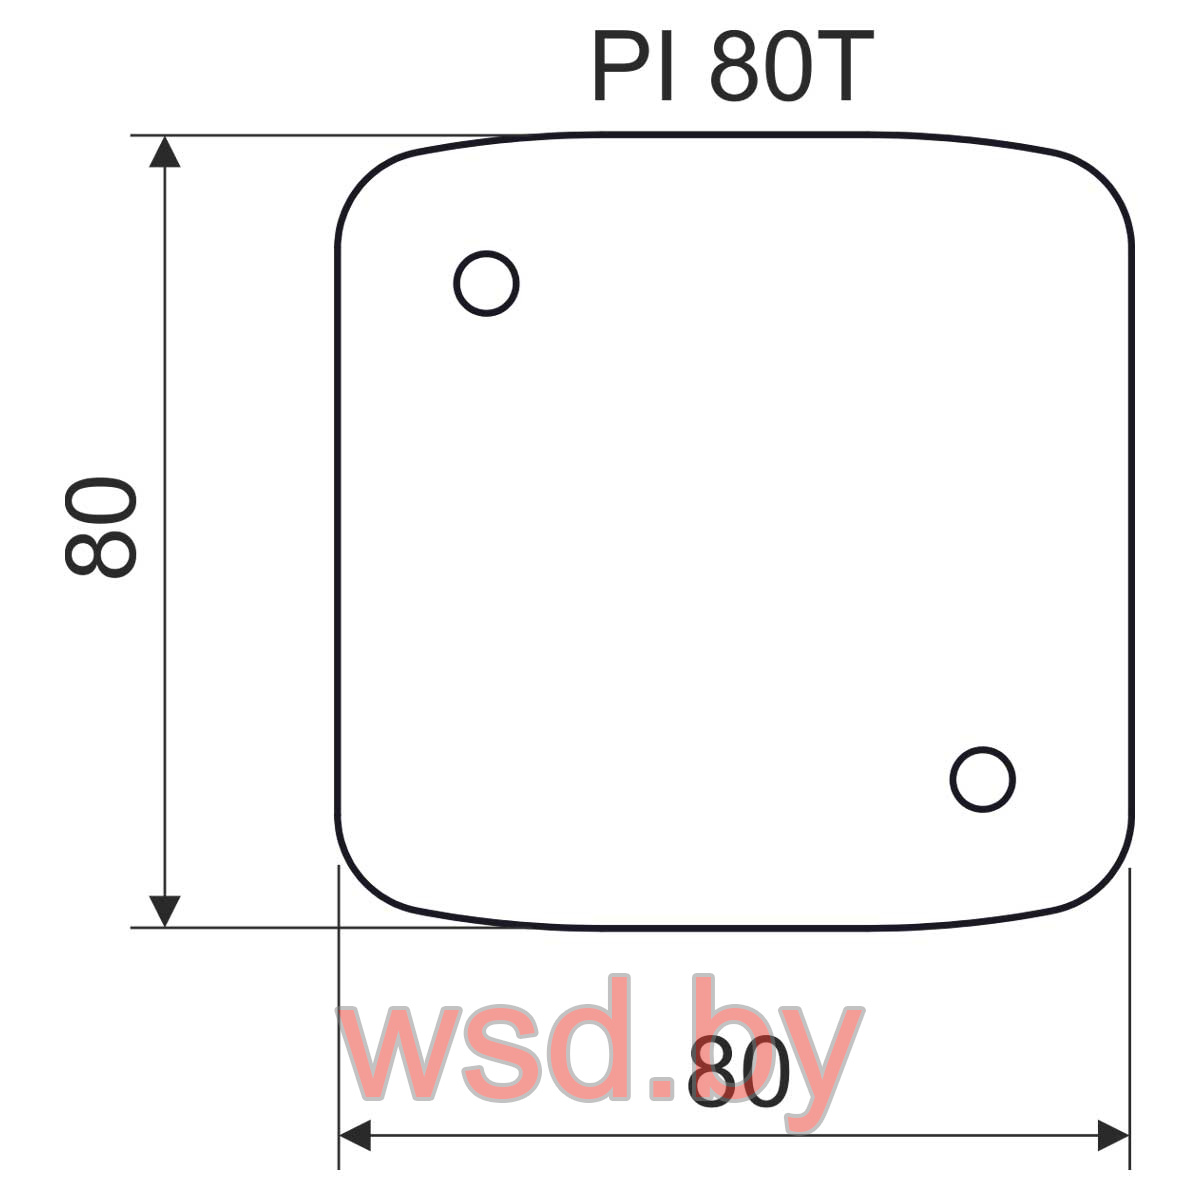 PI 80T XX Теплоизолирующая подкладка 80х80х5мм для коробок LK 80X16 T, LK 80X28 T Kopos. Фото N2